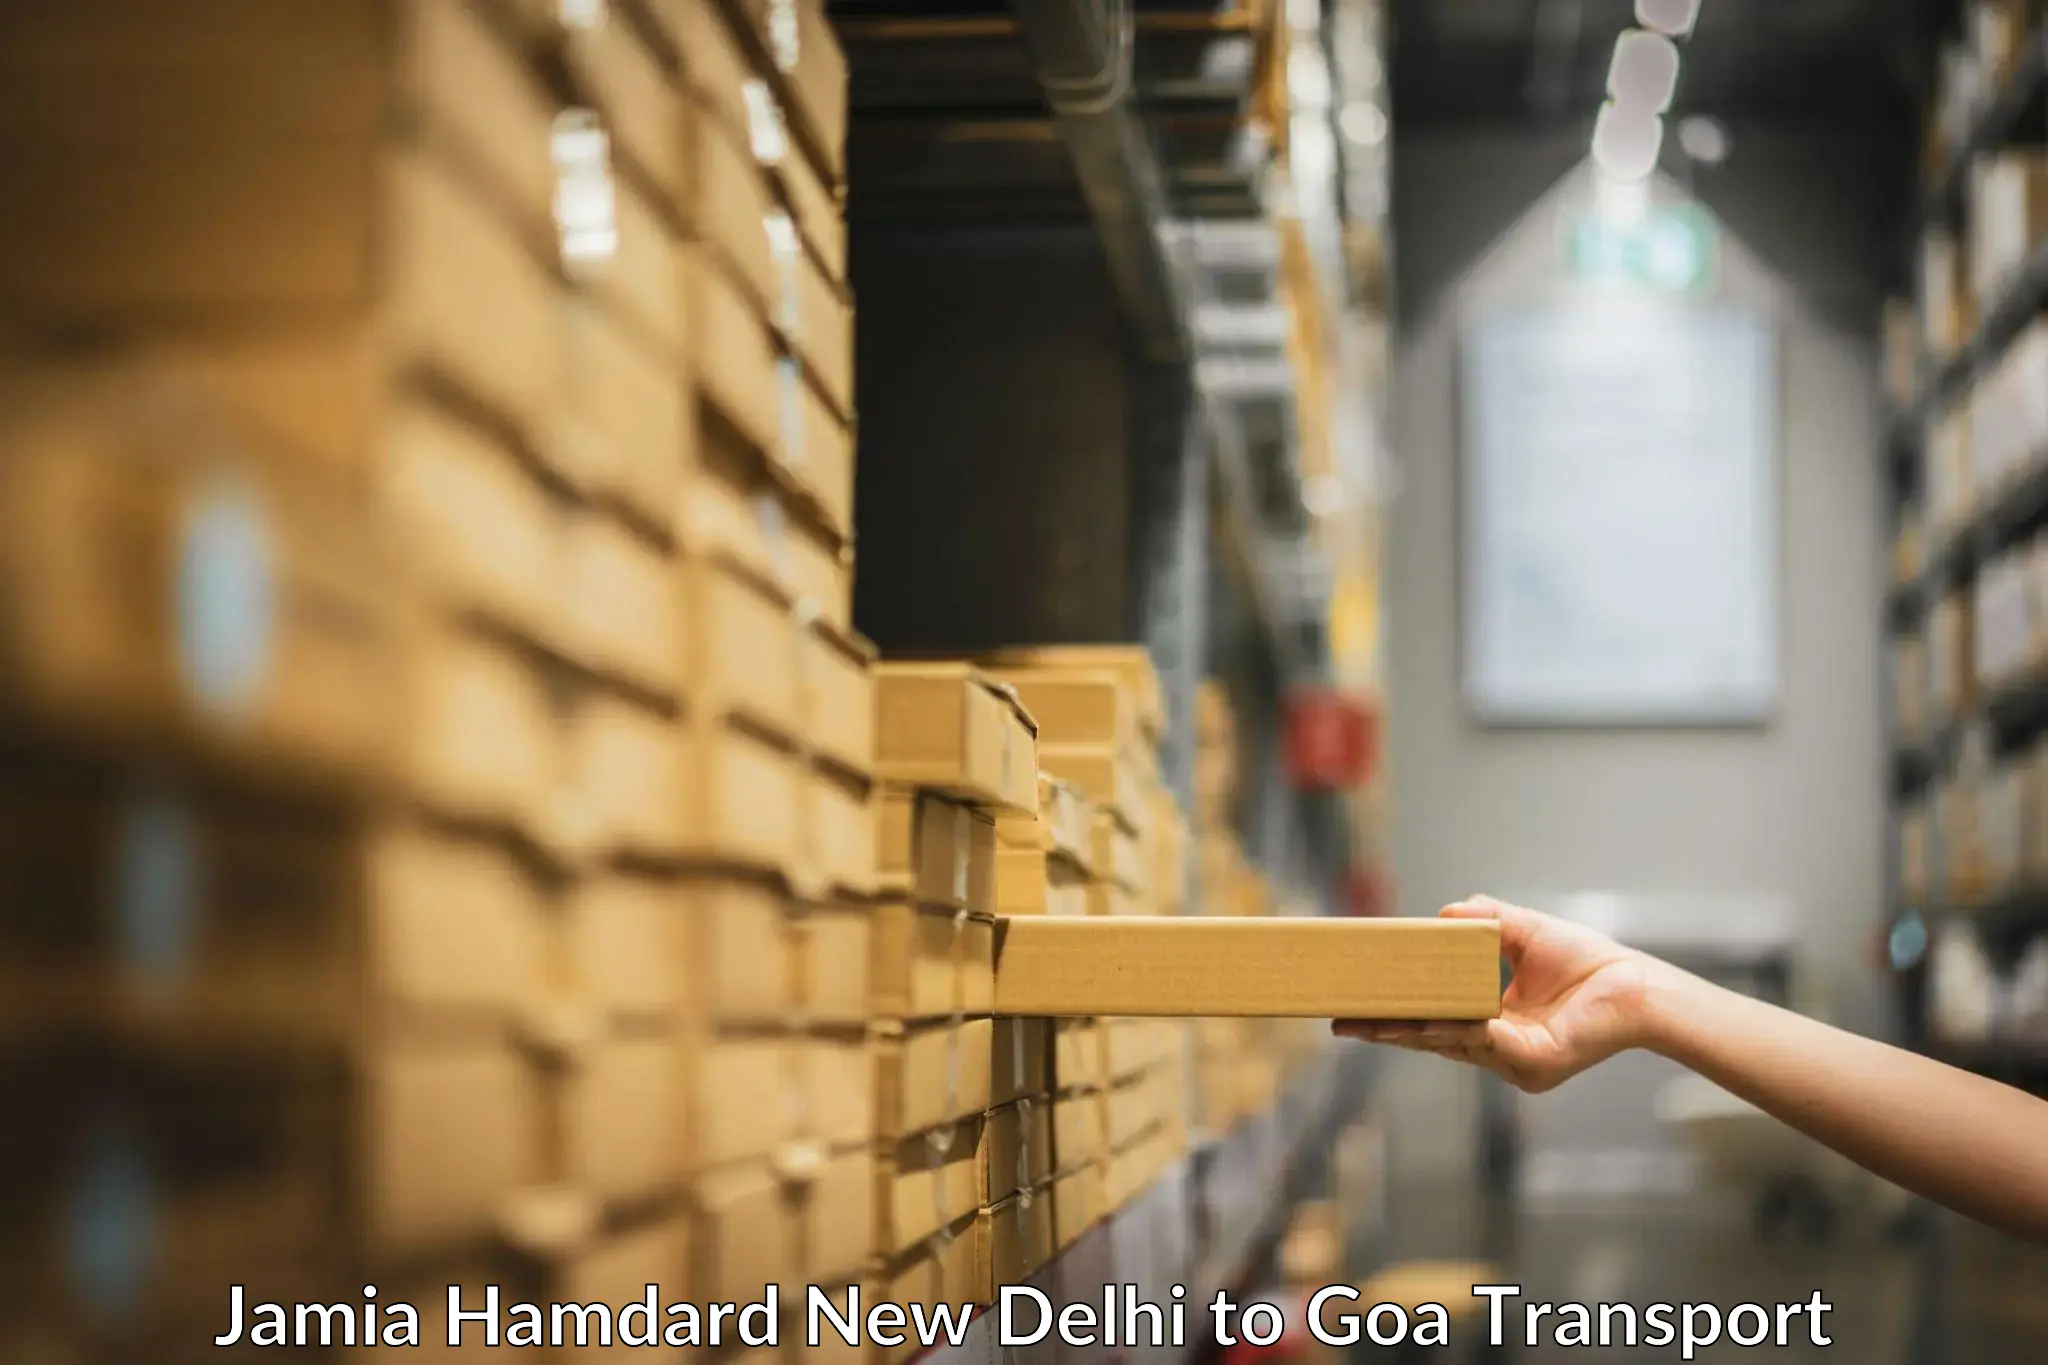 India truck logistics services Jamia Hamdard New Delhi to Goa